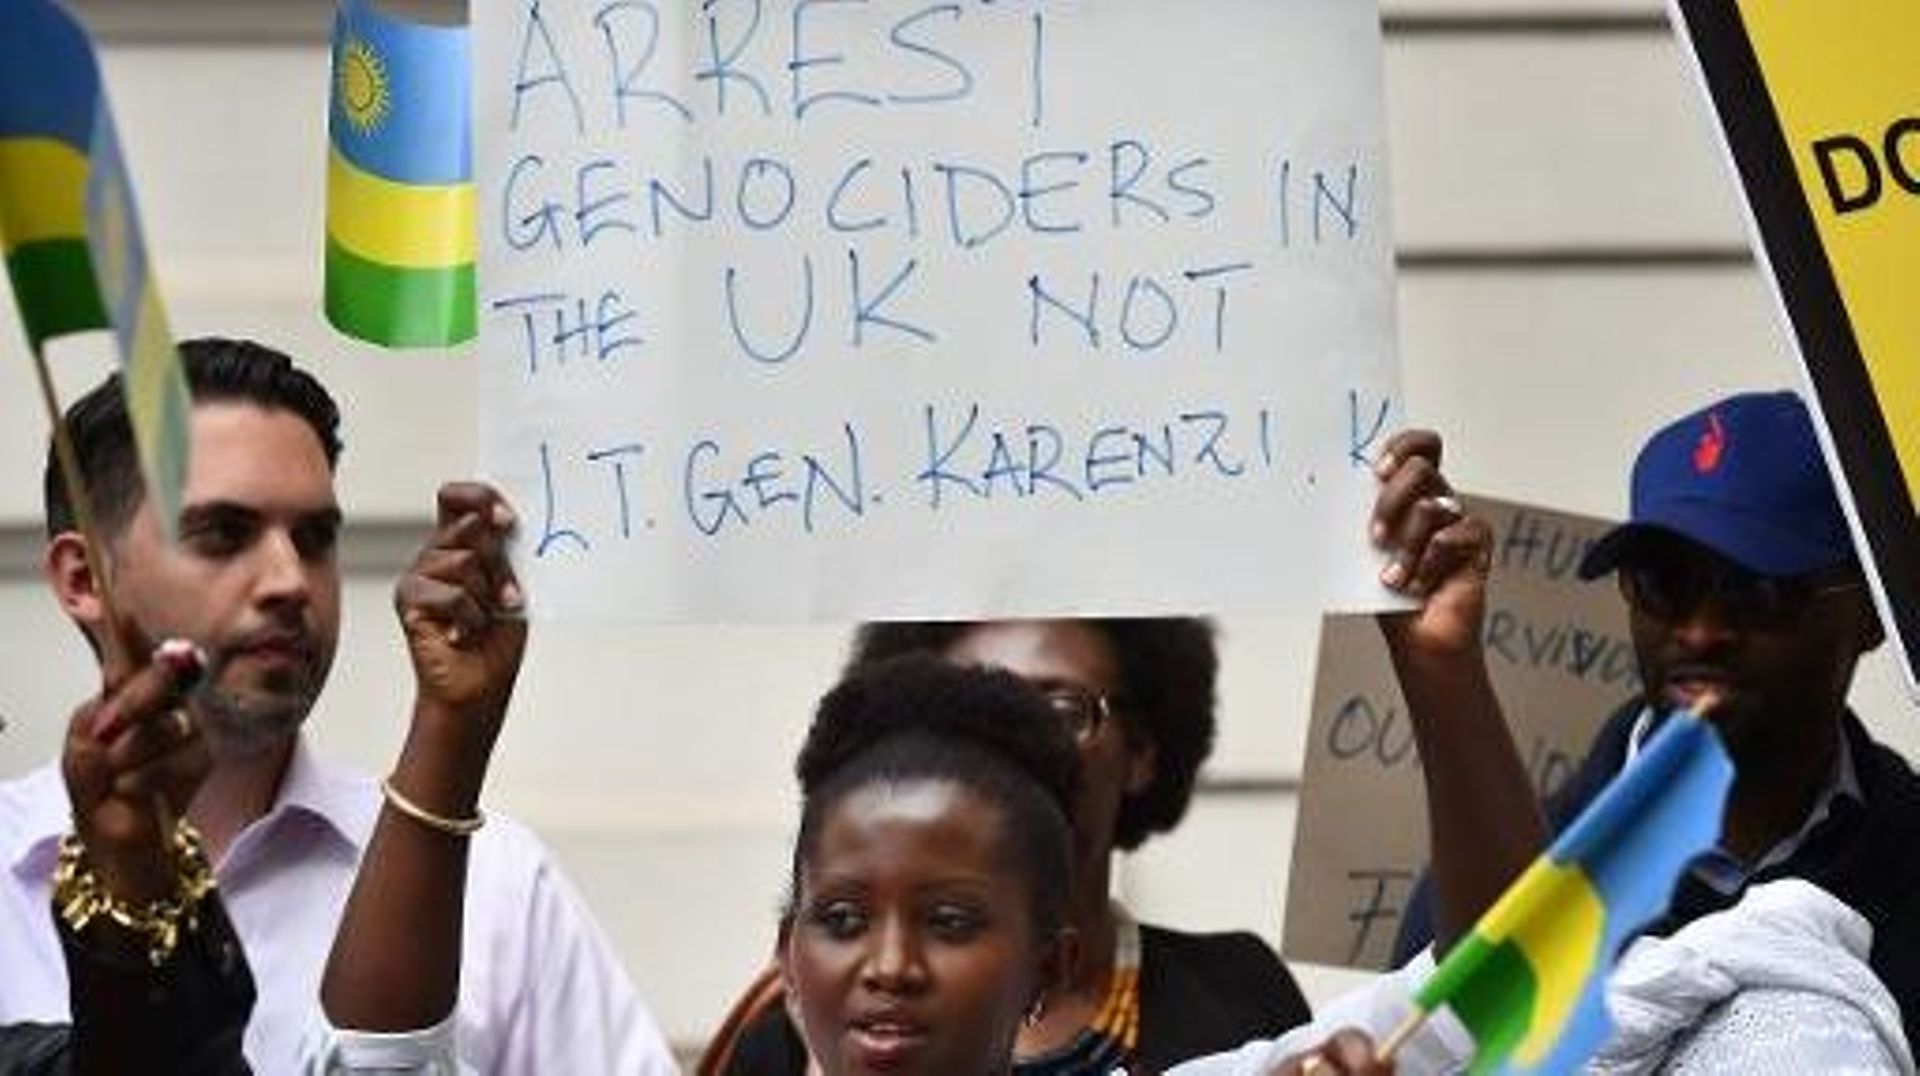 Des manifestants réclament la libération du chef des services secrets rwandais, le général Karenzi Karake, le 25 juin 2015 à Londres